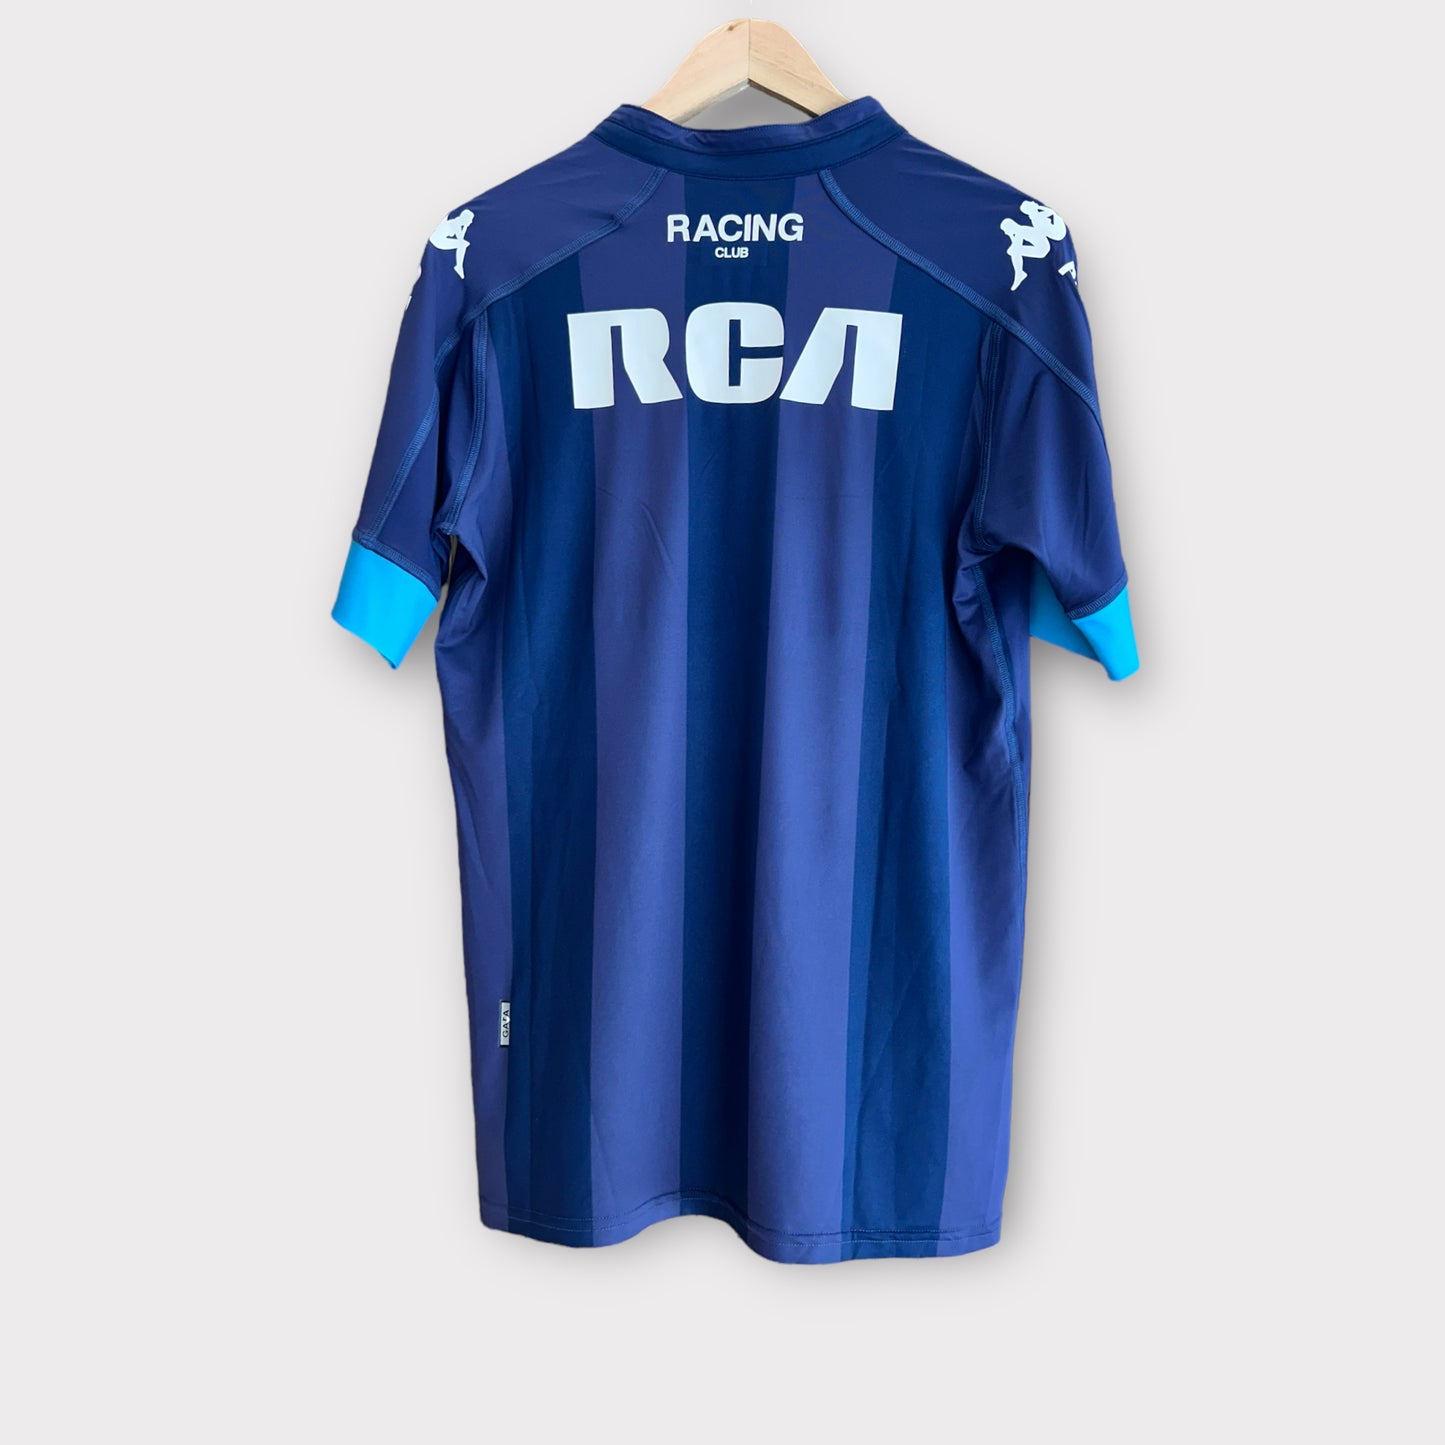 Racing Club 2017 Away Shirt (Large)